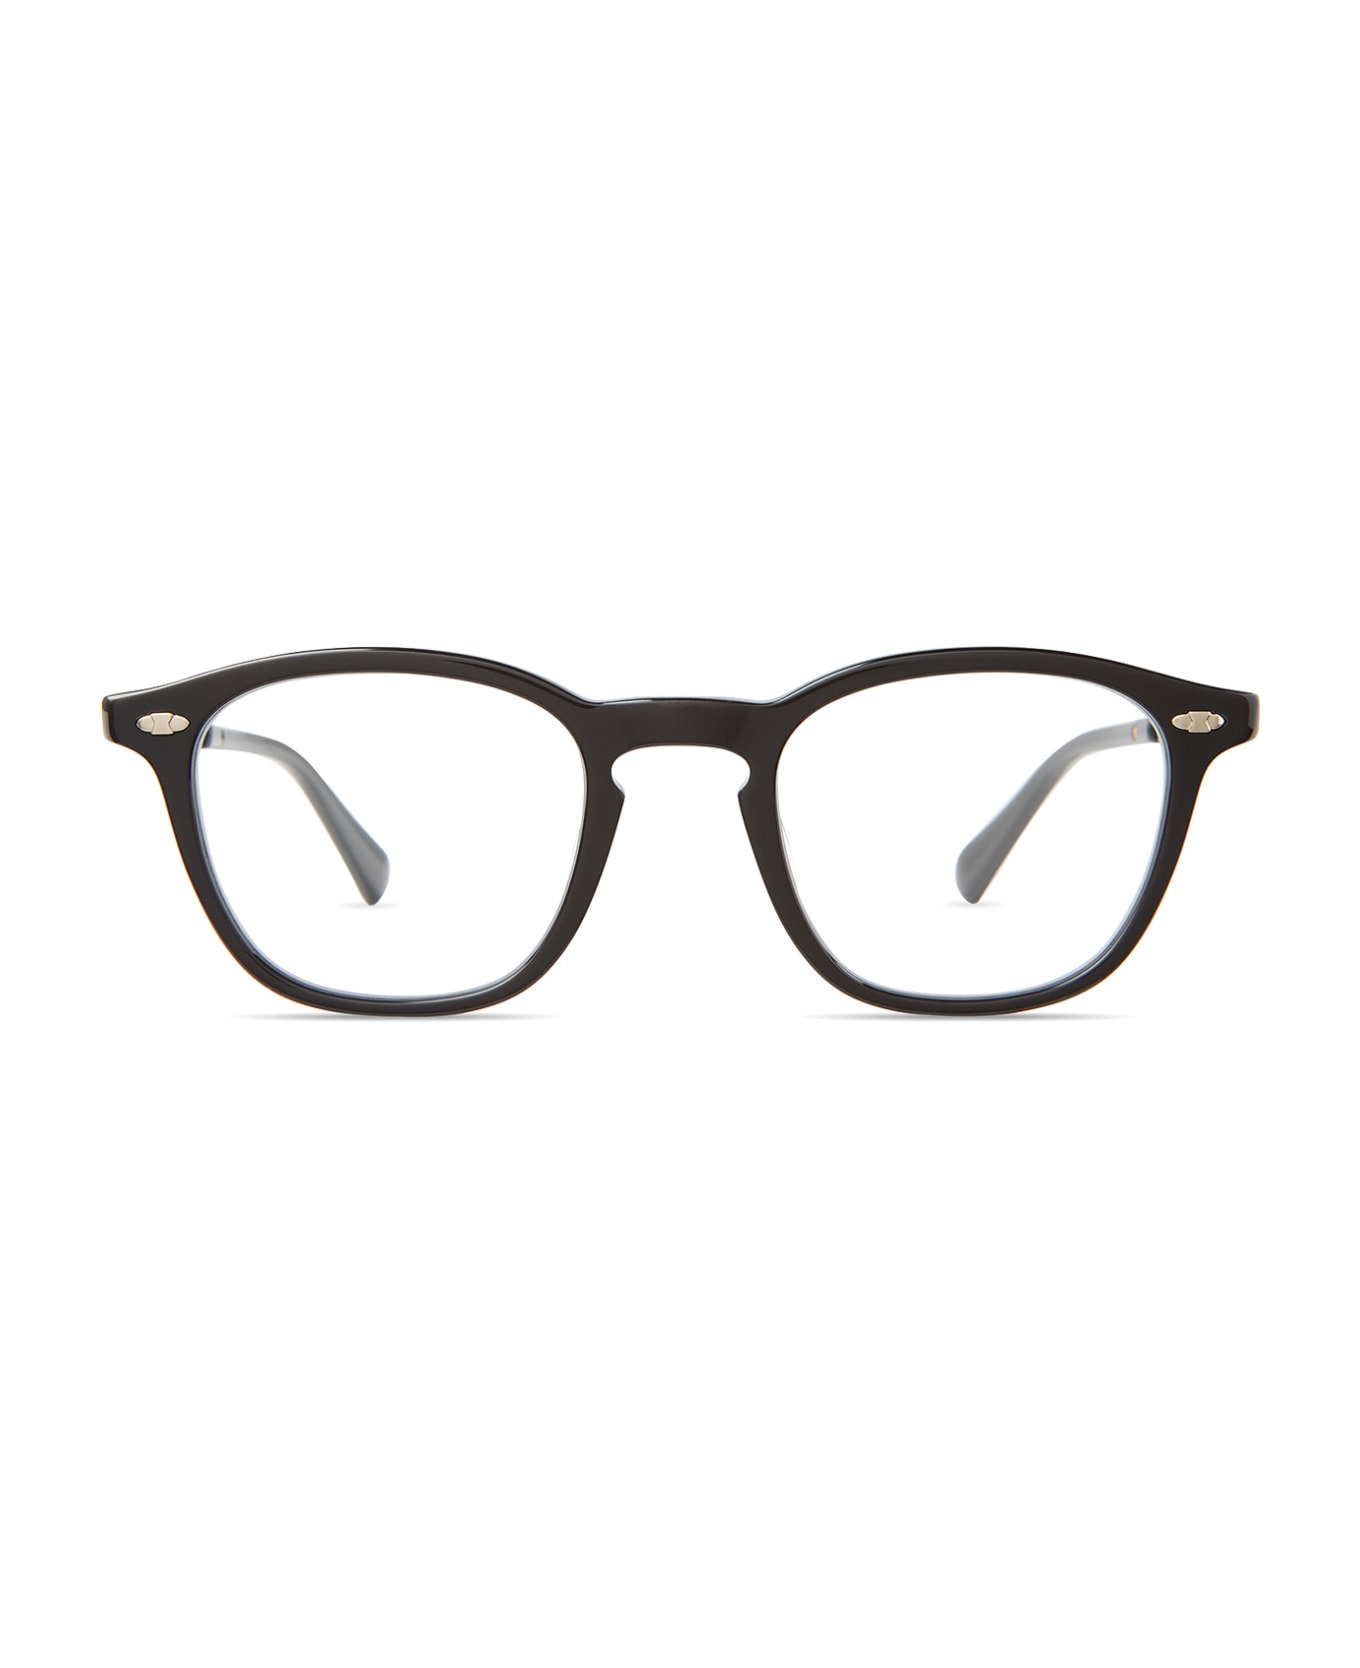 Mr. Leight Devon C Black-gunmetal Glasses - Black-Gunmetal アイウェア